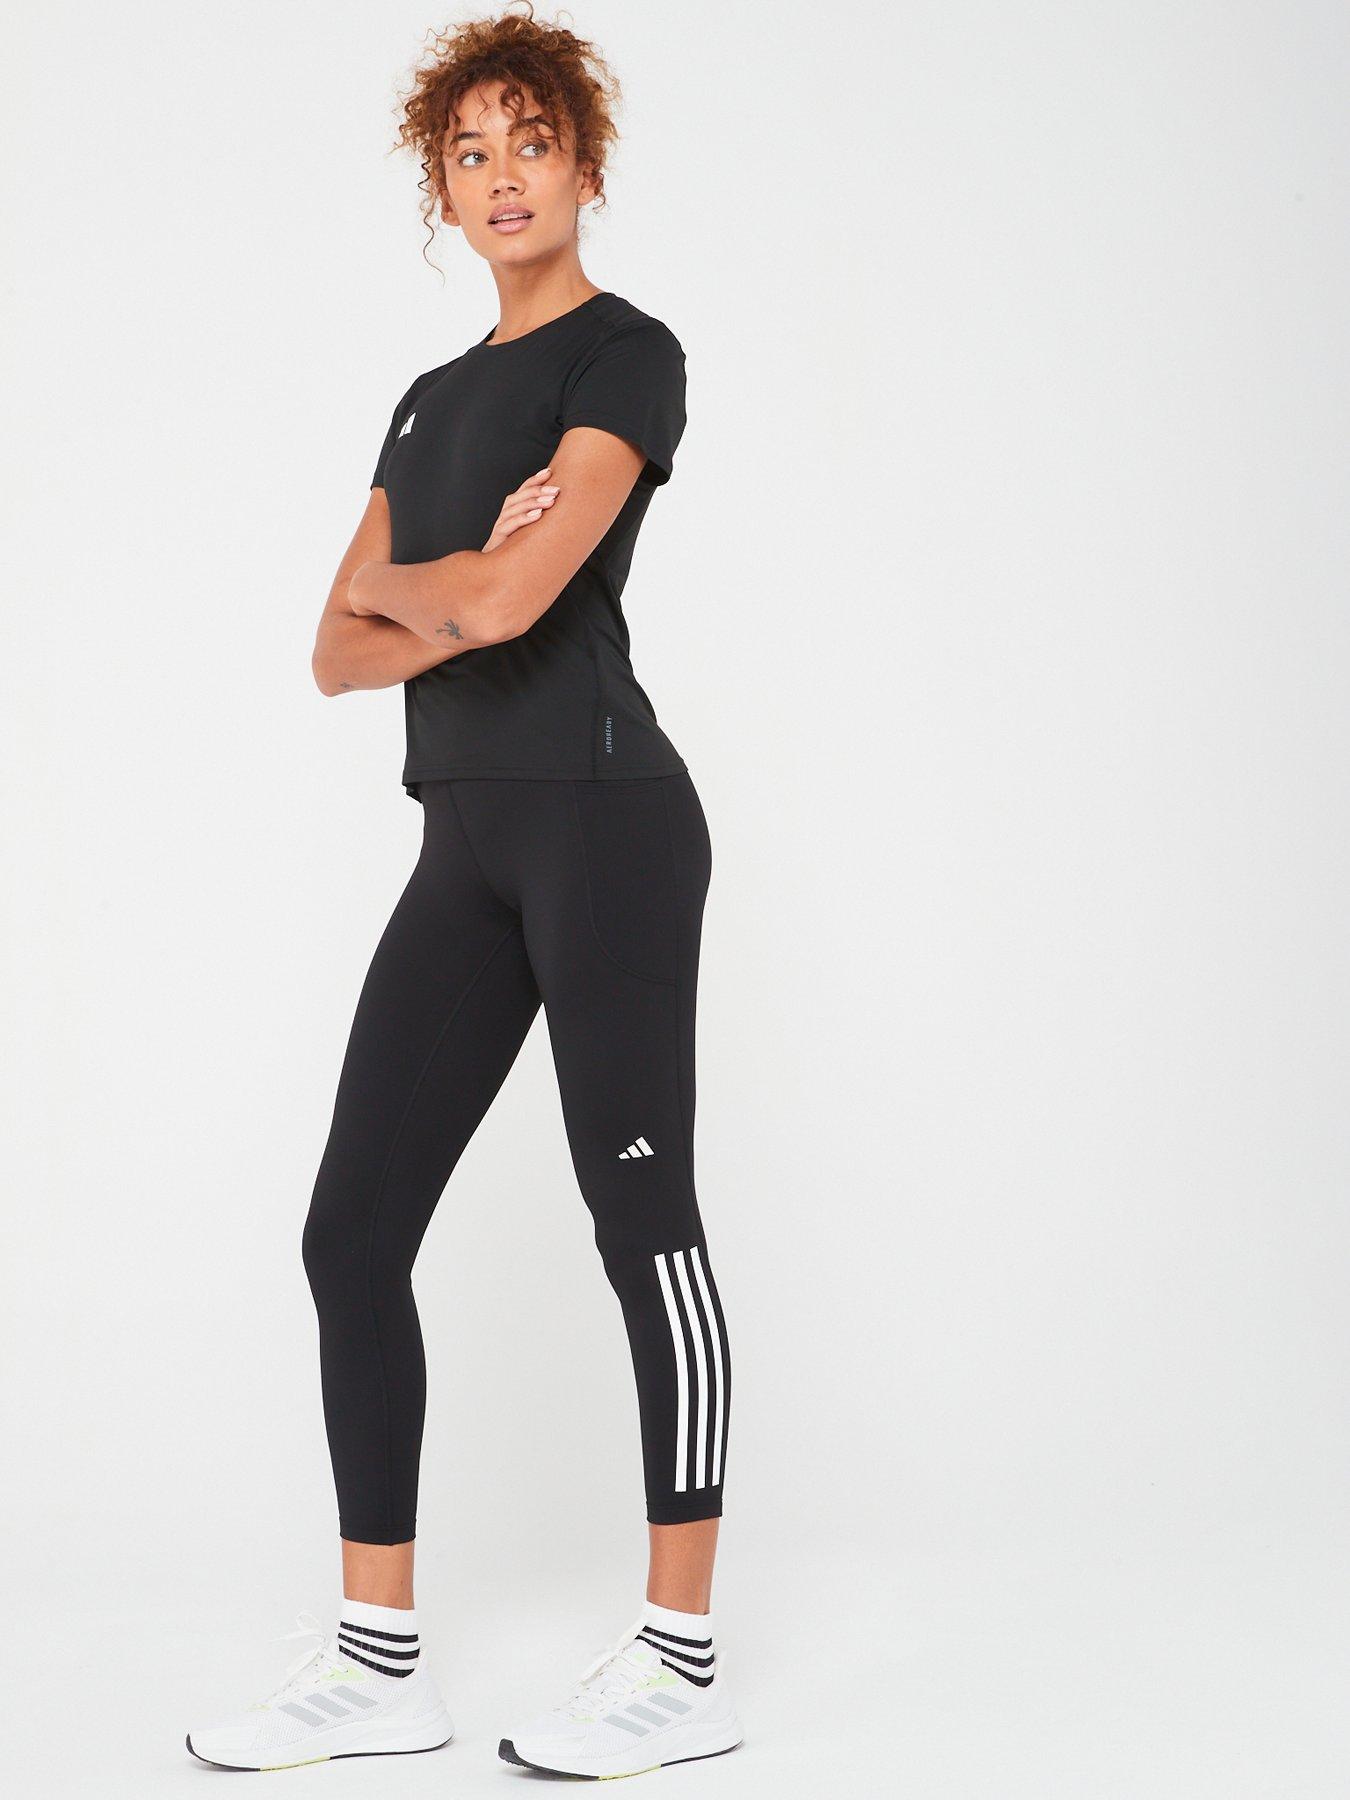 Nike Womens Nike Pro Mid-Rise 7/8 Graphic Leggings - Black